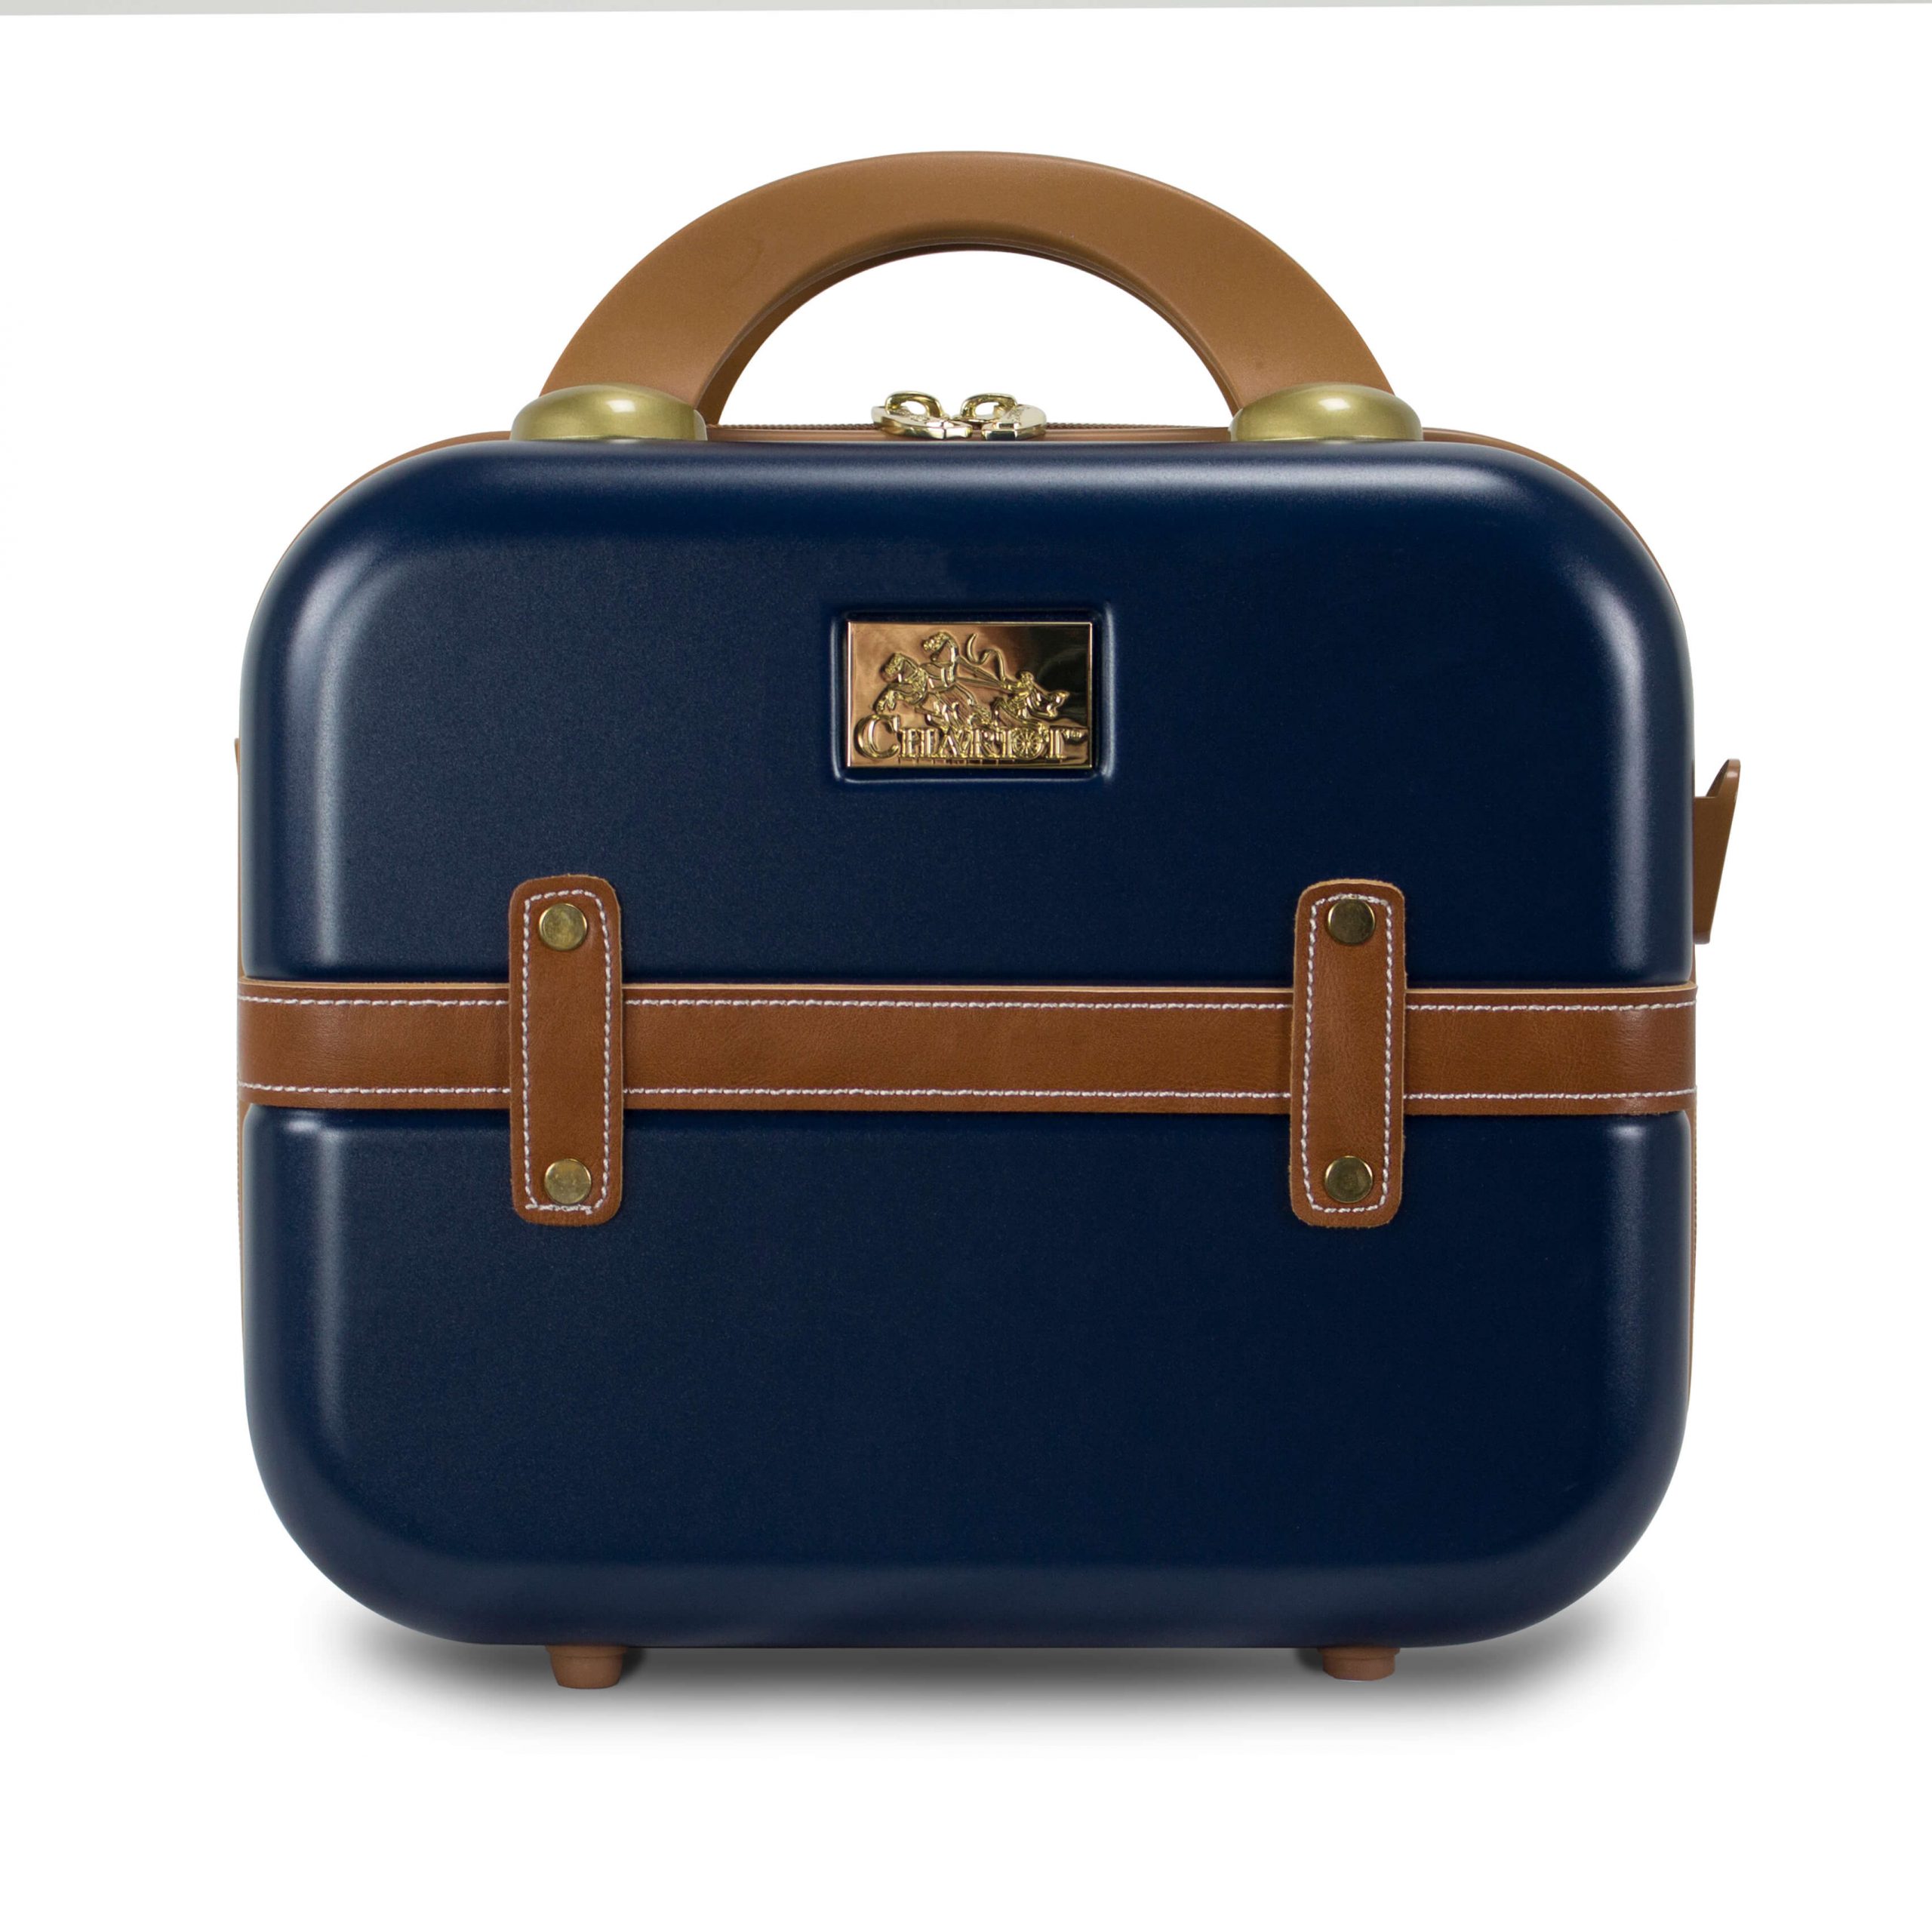 ☆安心の定価販売☆】 Chariot Gatsby 2-piece set Hardside Expandable Carry On Luggage  With Matching Beauty Case (Mint)